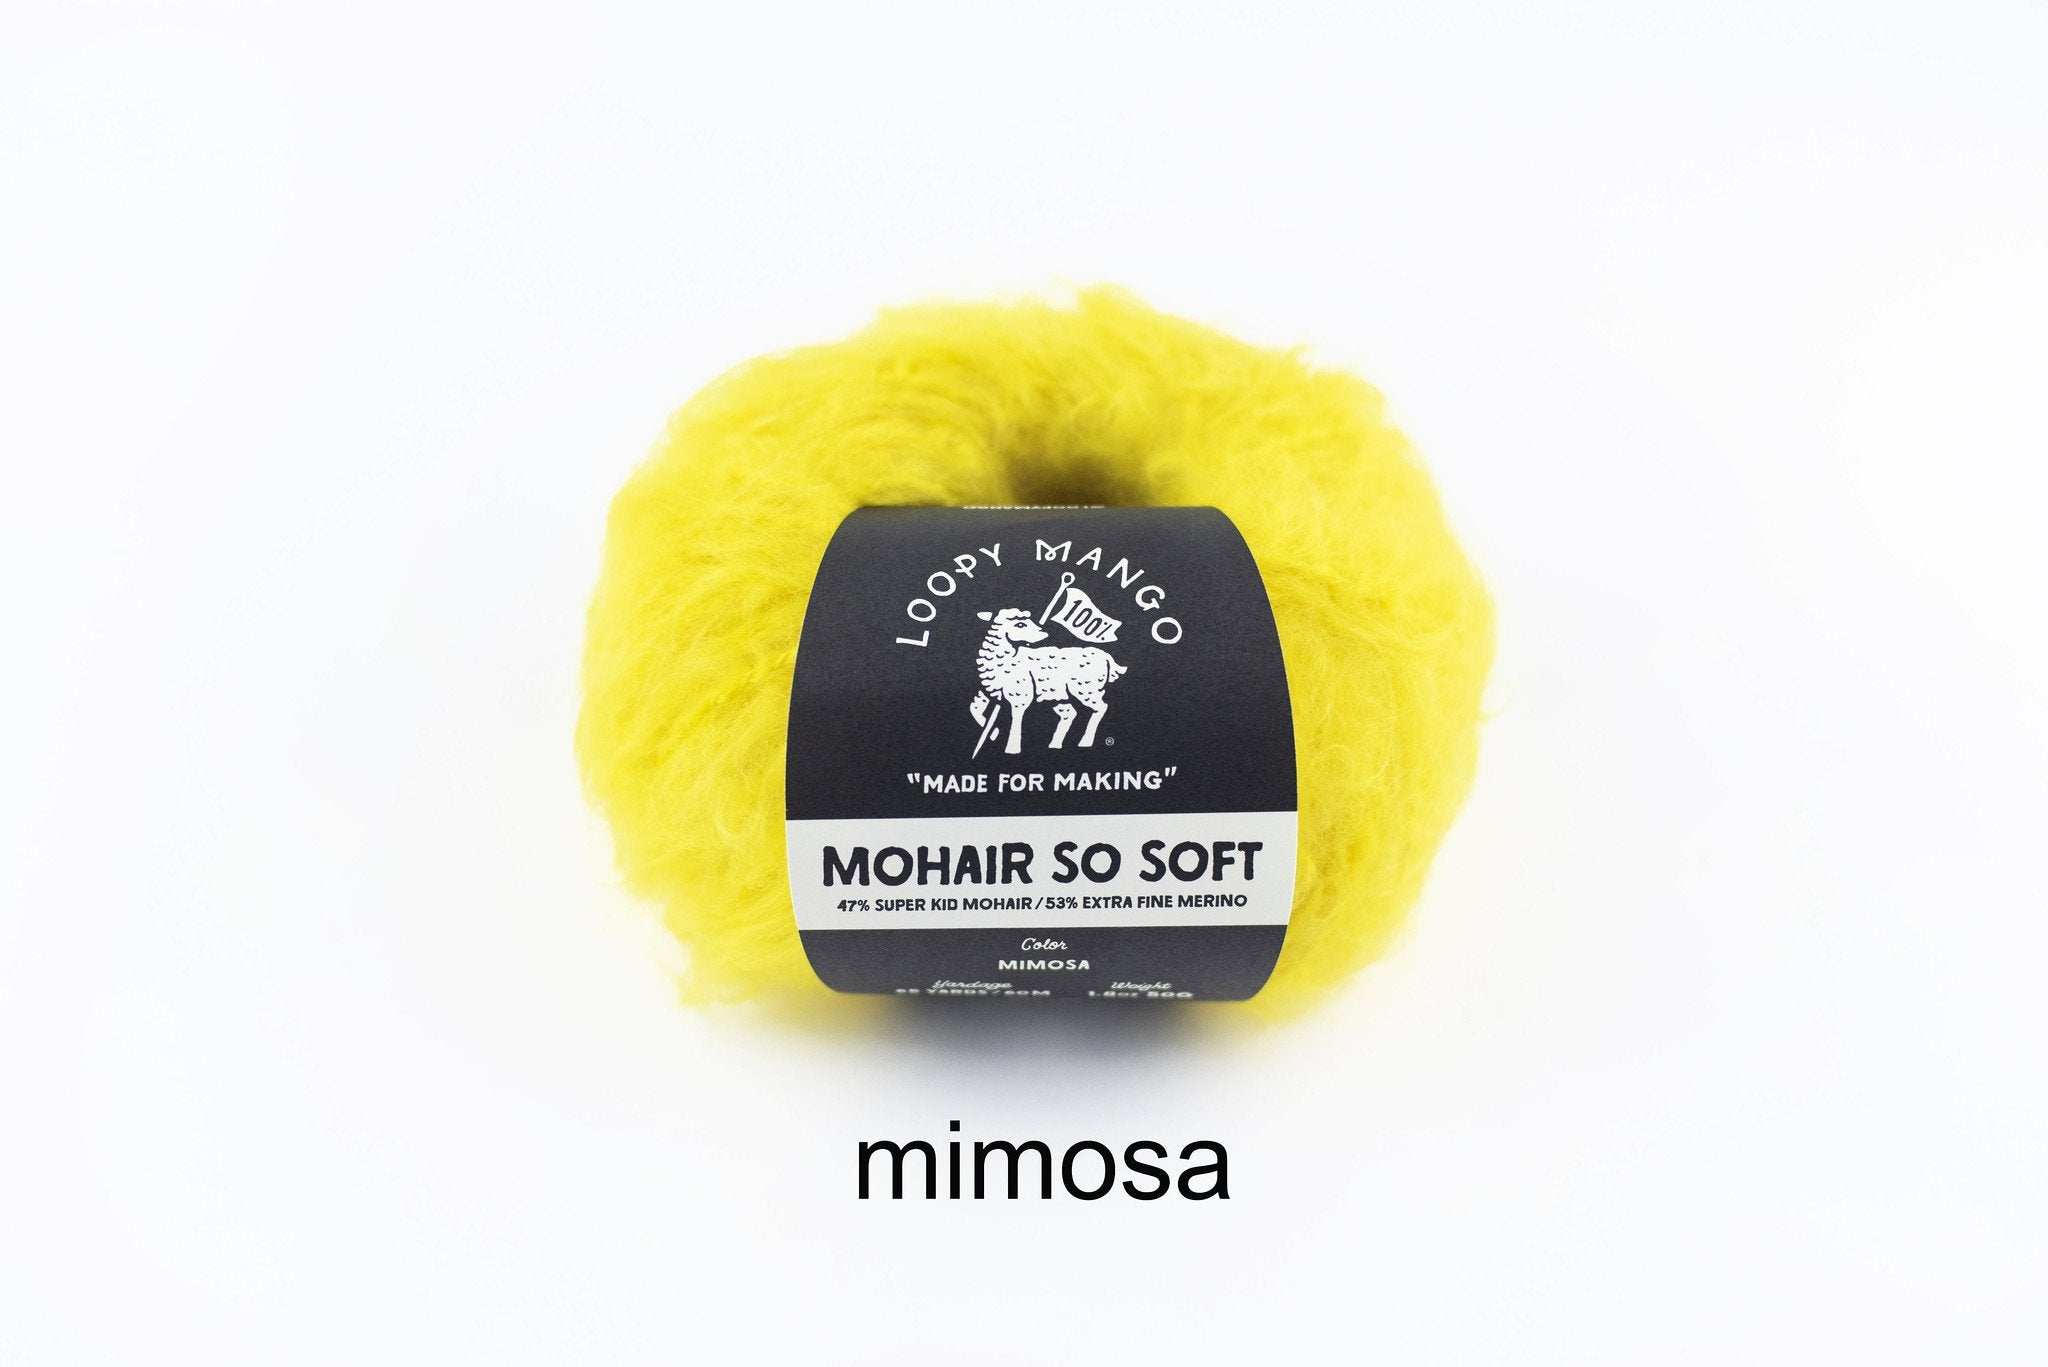 Mimosa_t_1024x1024_2x_a484e364-c05f-4493-ab63-b16713b07ca1.jpg